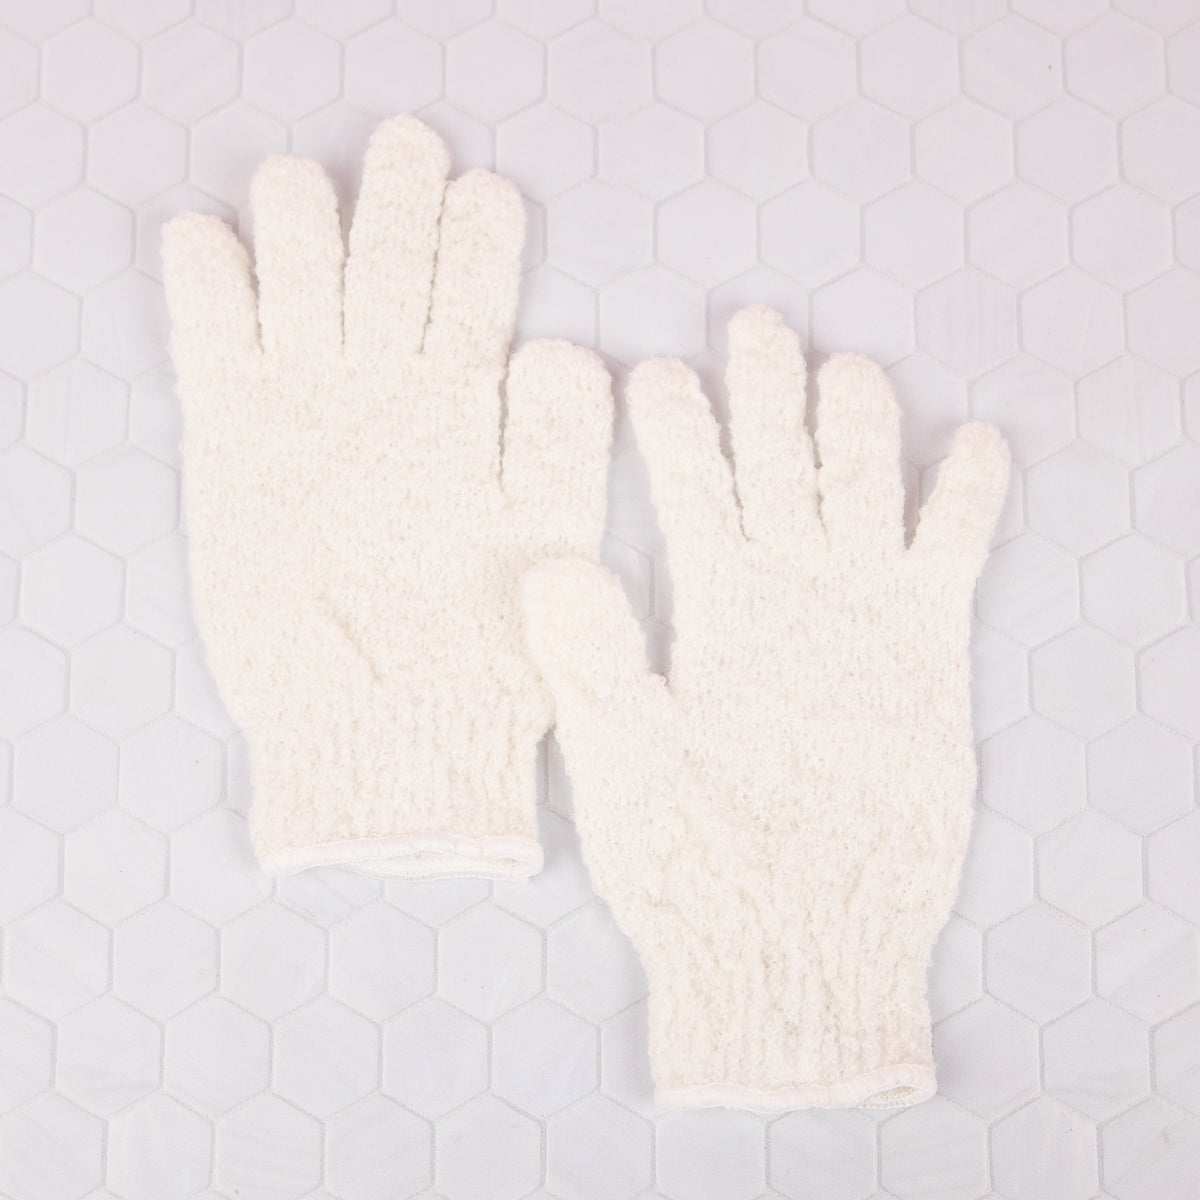 Exfoliating bath gloves